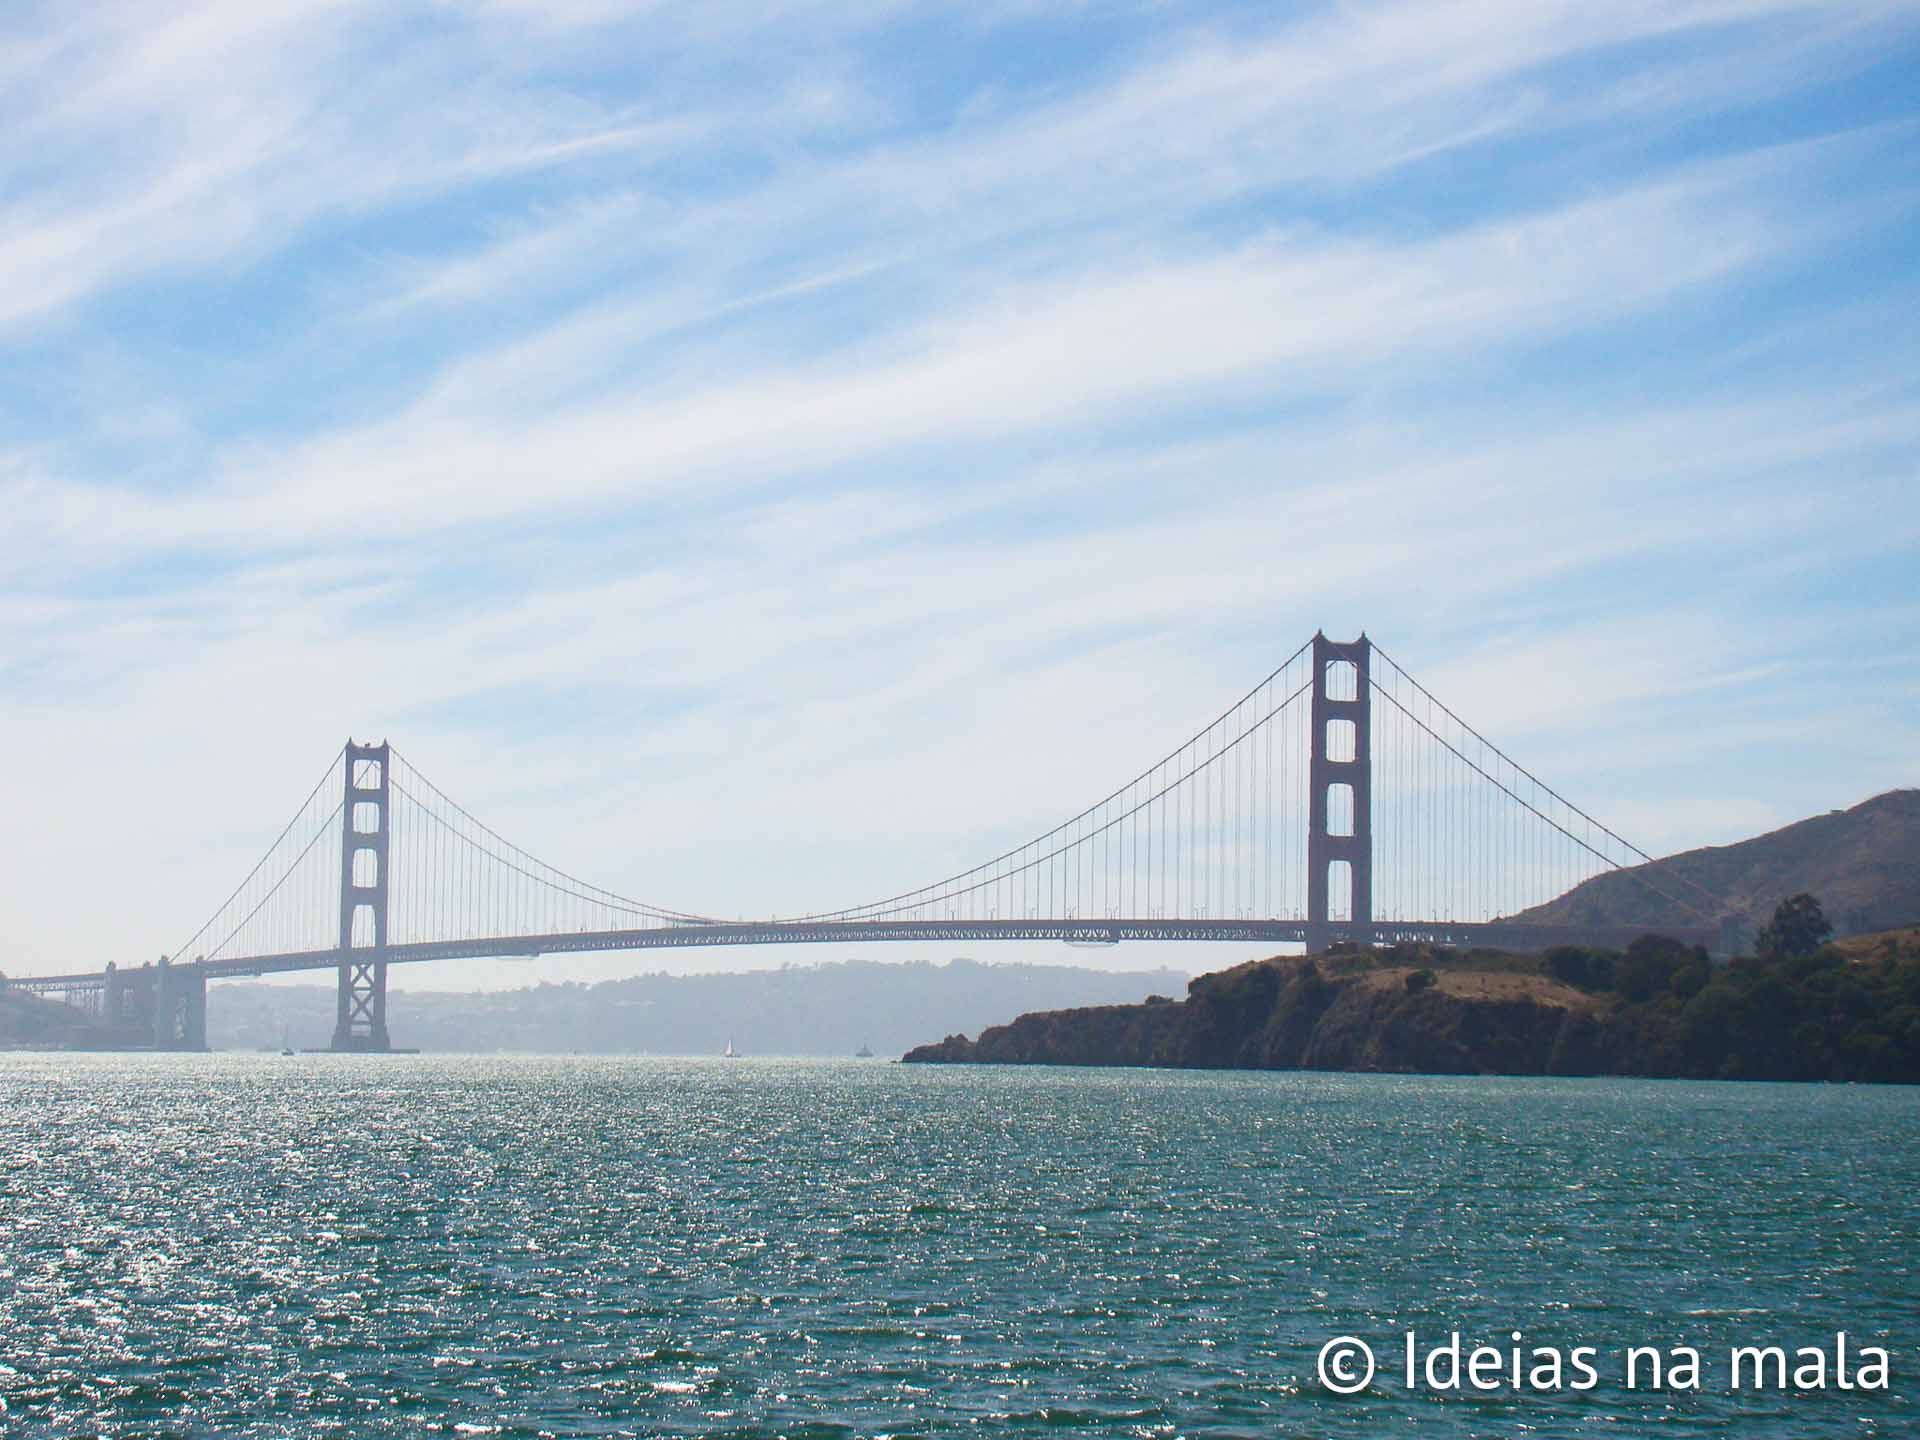 Golden Gate vista do Ferry que faz a viagem SF - Sausalito e vice versa